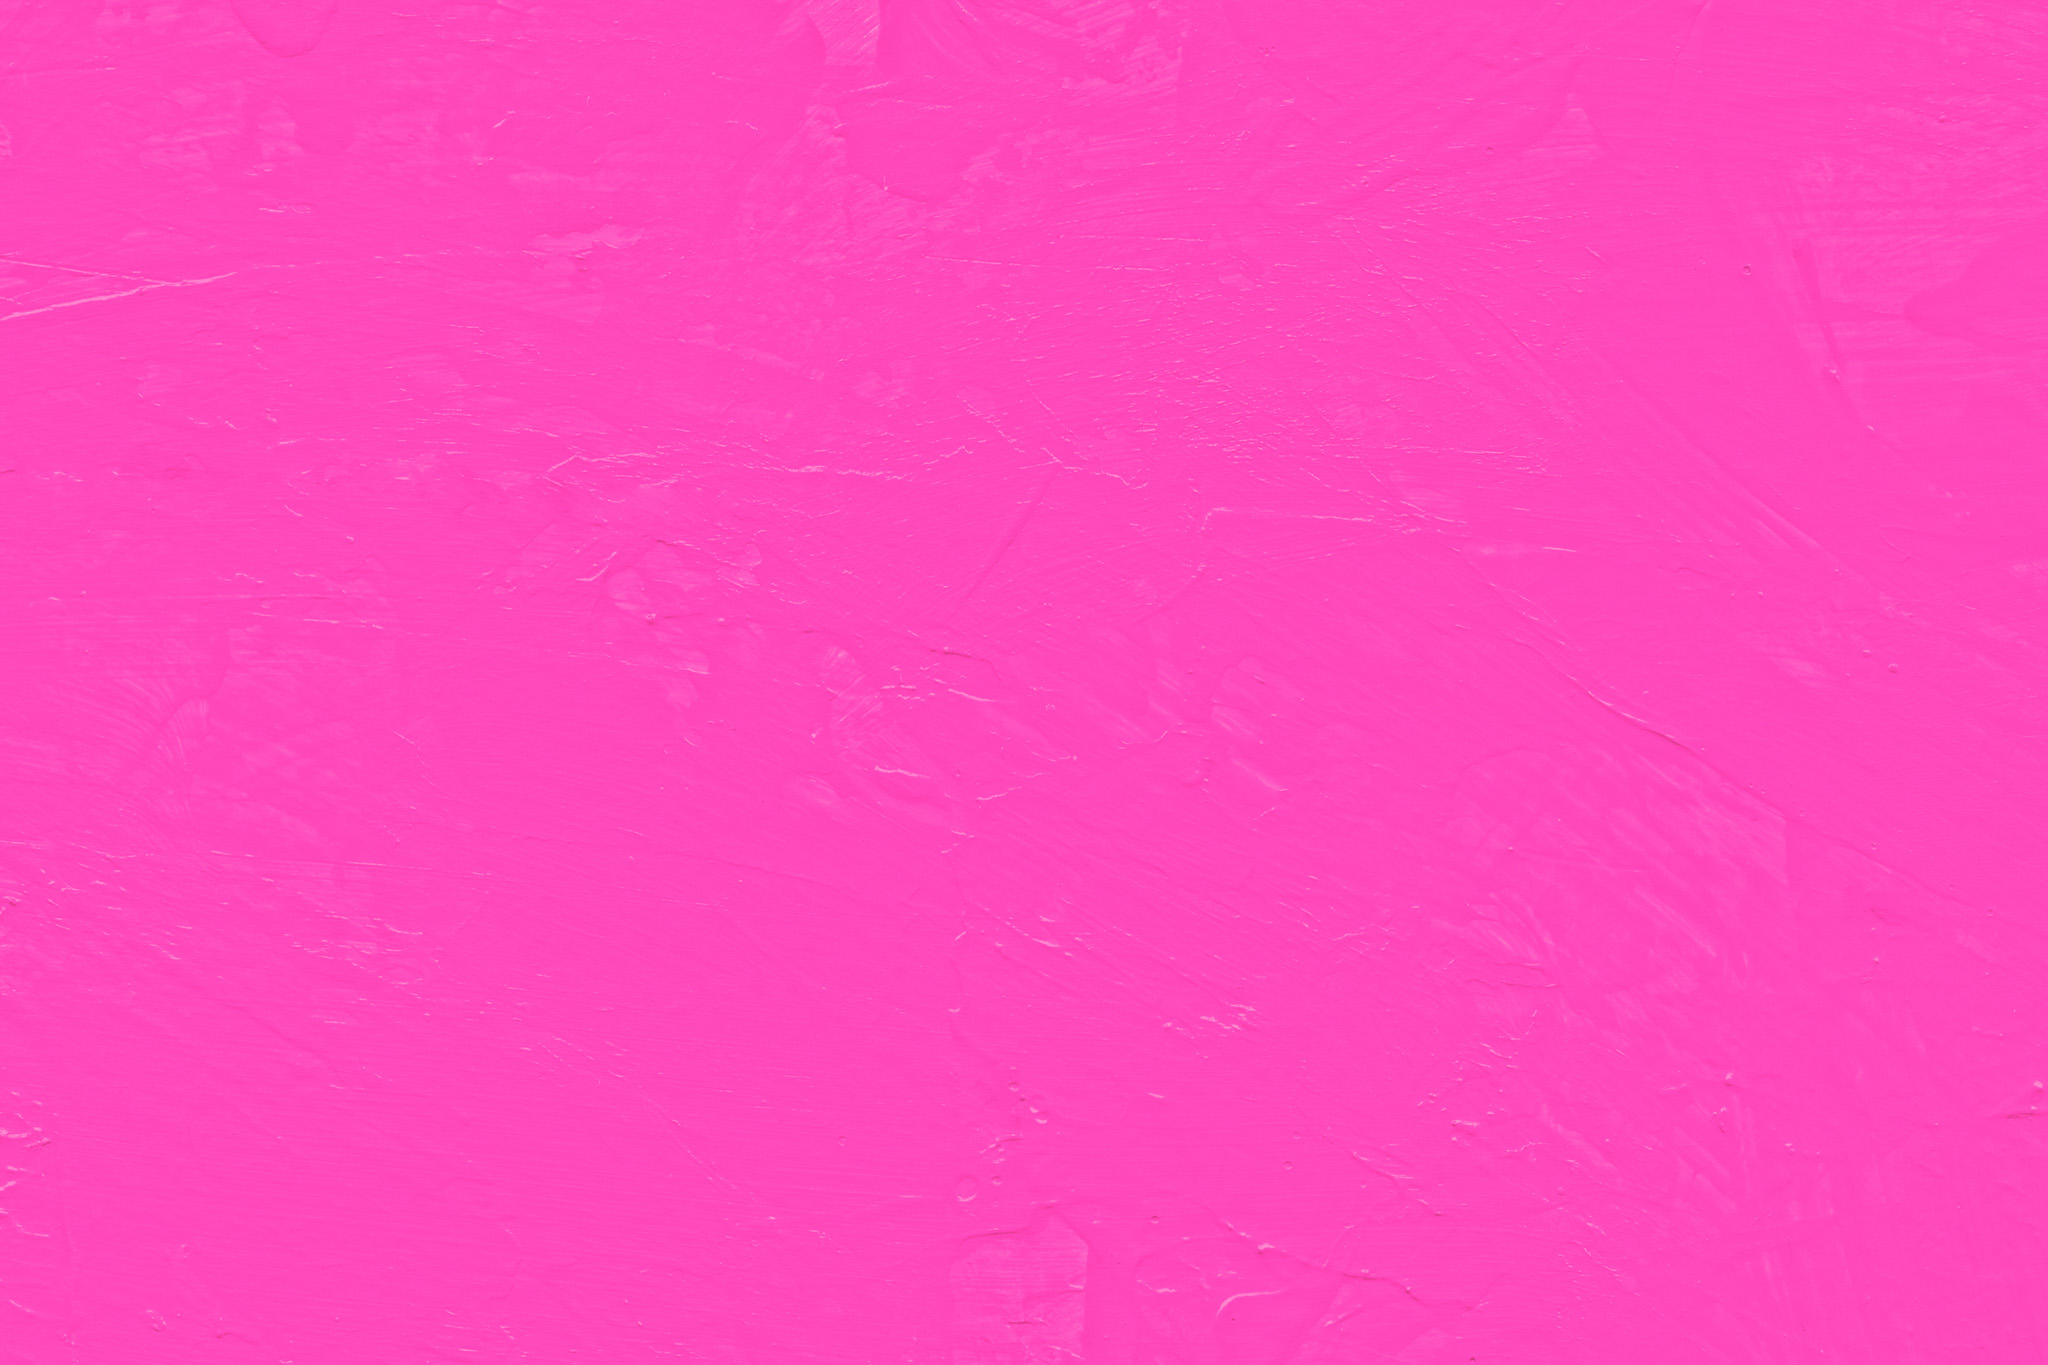 おしゃれなピンク色の無地の背景 の画像素材を無料ダウンロード 1 フリー素材 Beiz Images